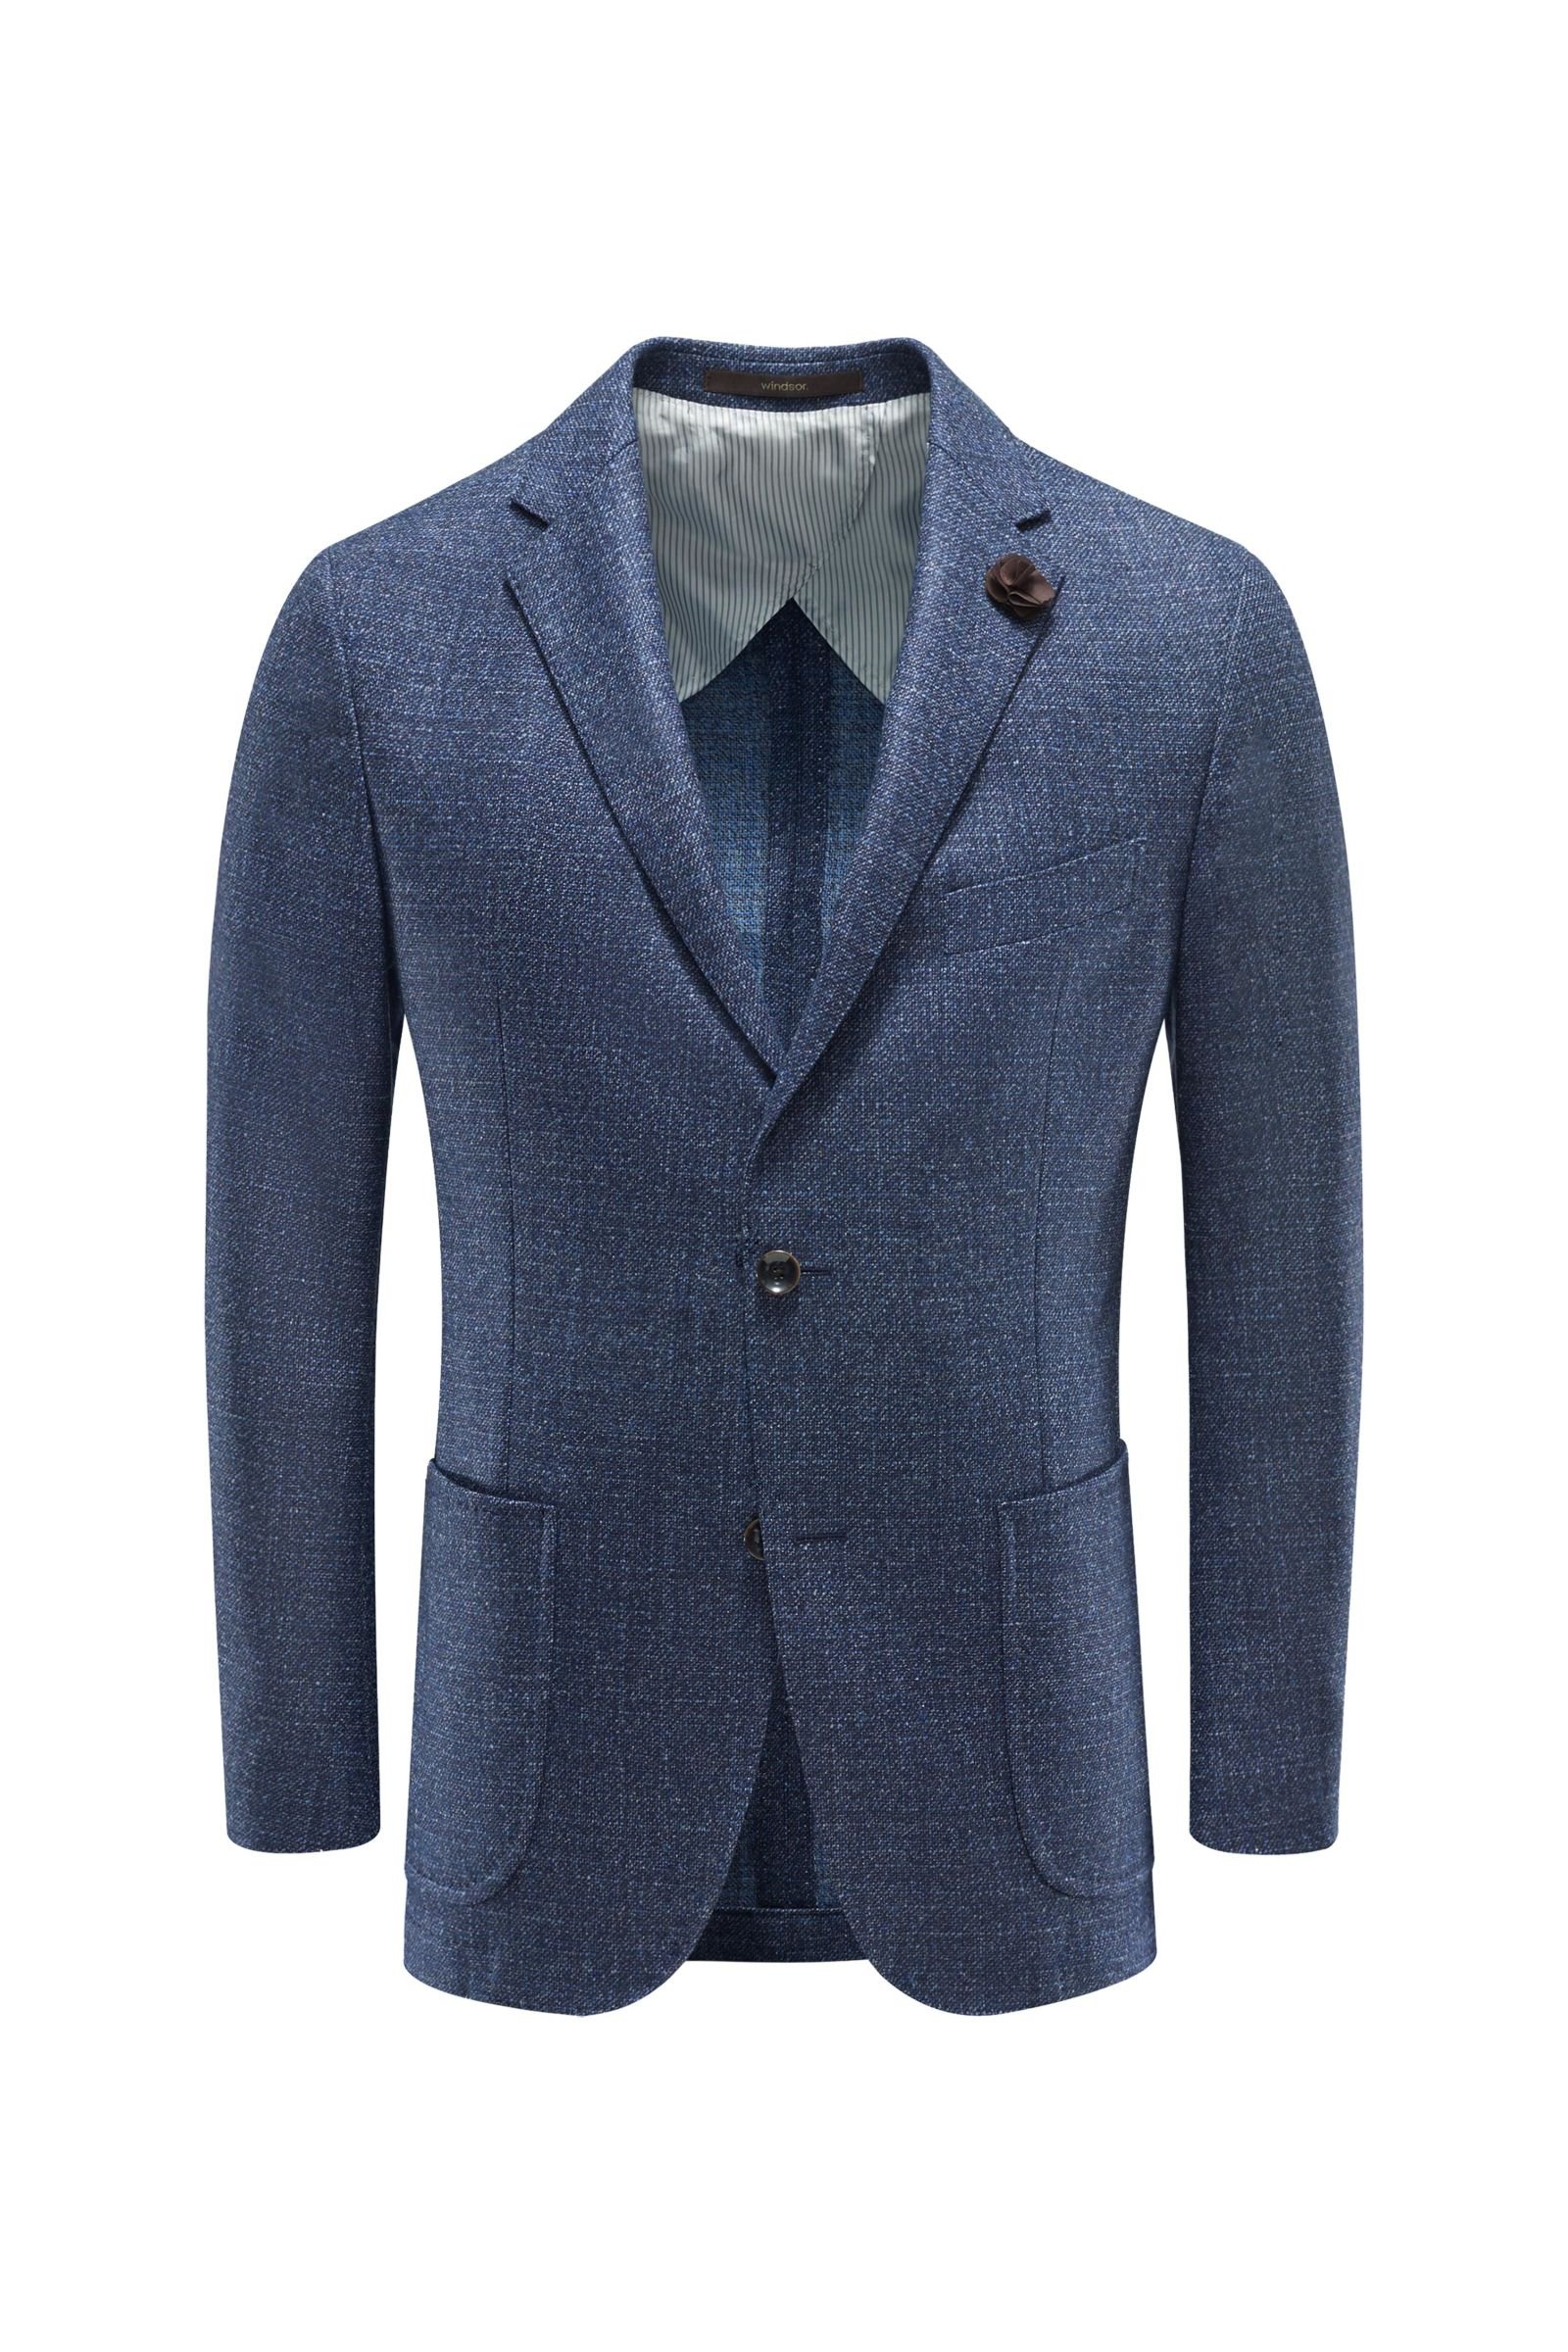 Smart-casual jacket 'Magliero' grey-blue